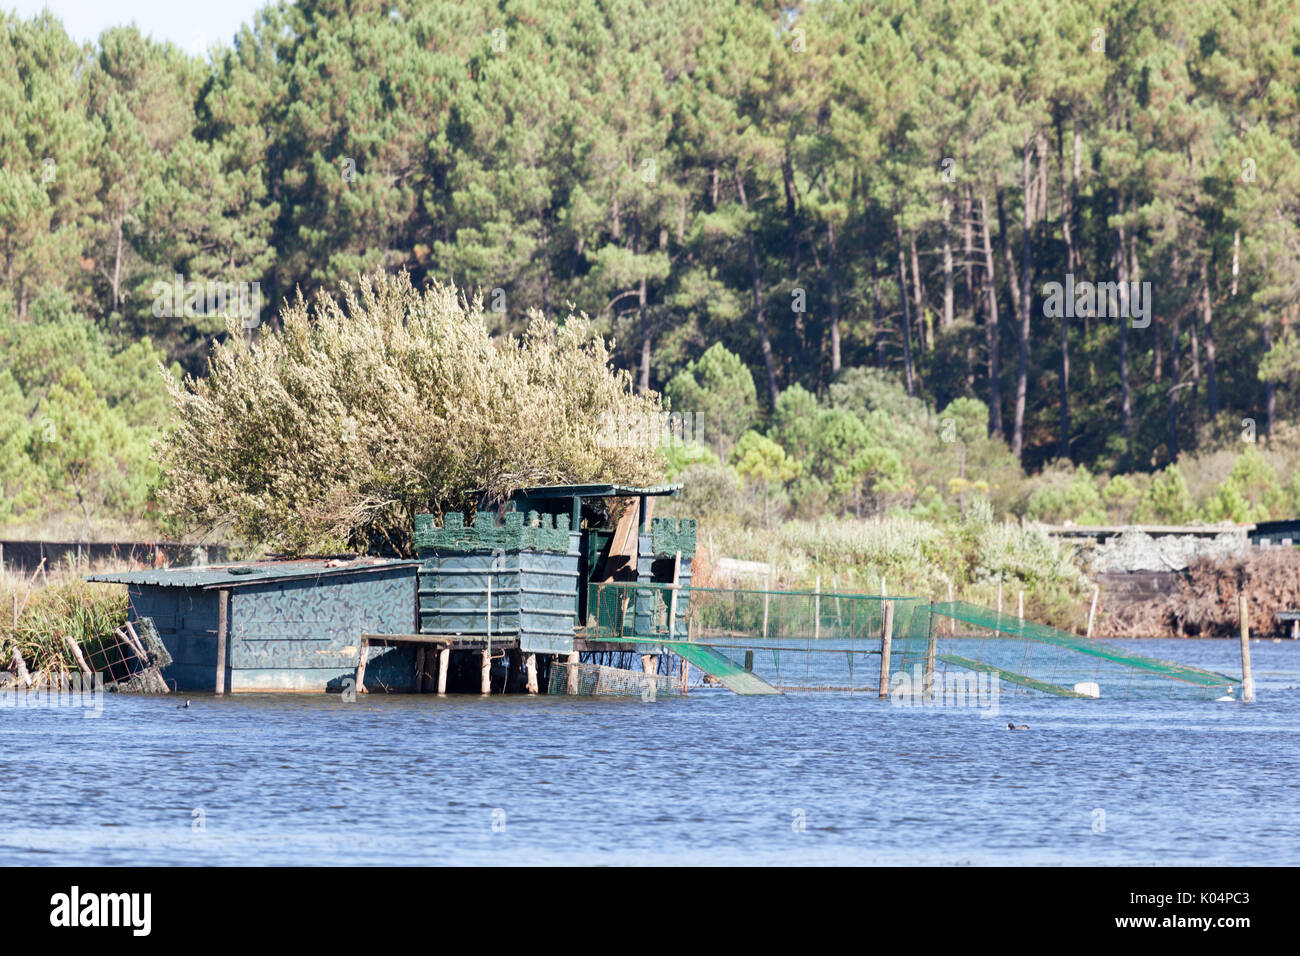 En été, une hutte de chasse aux canards sur l'étang de Hardy, à Seignosse (Landes - France). Il y a environ une douzaine de ces huttes dans ce même lieu. Banque D'Images